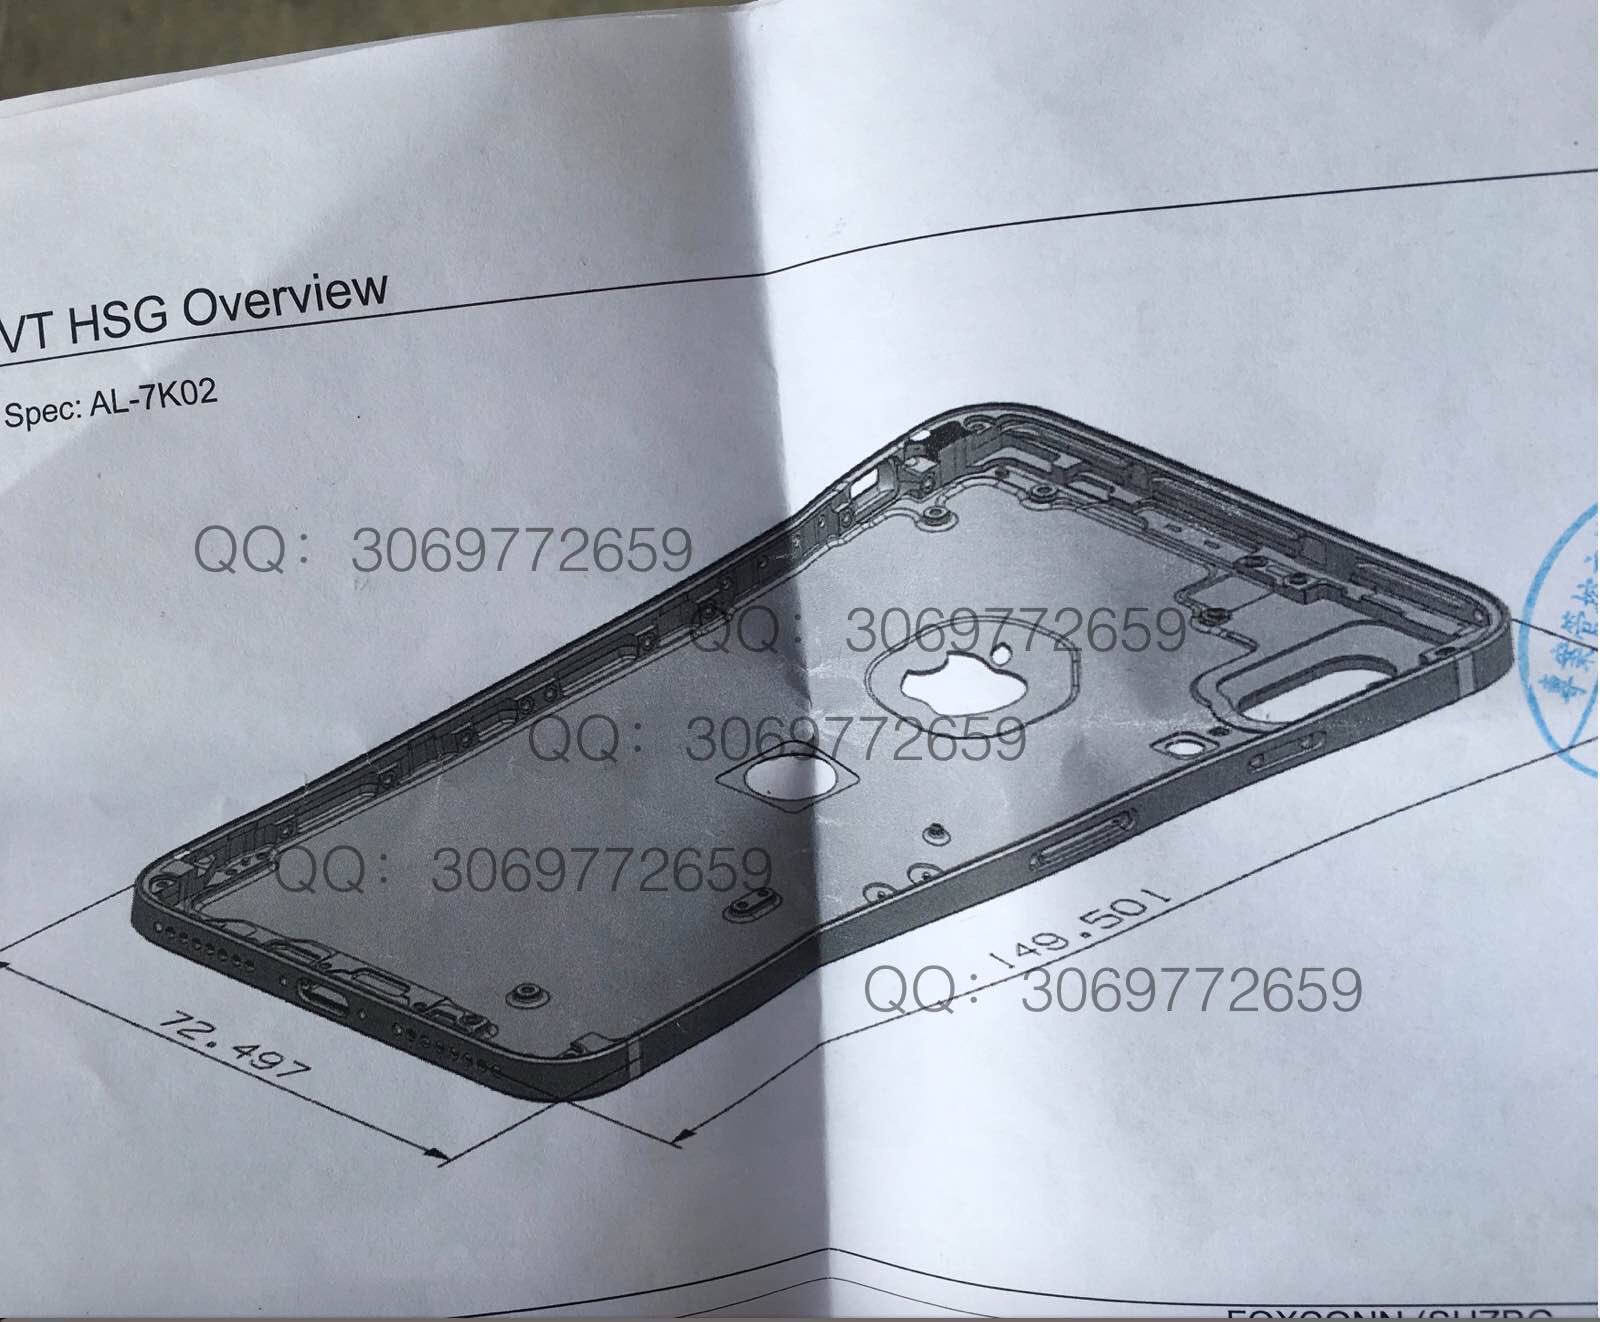 ｢iPhone 8｣のものとされる新たな図面の写真 ｰ Touch ID用とみられる穴が背面に